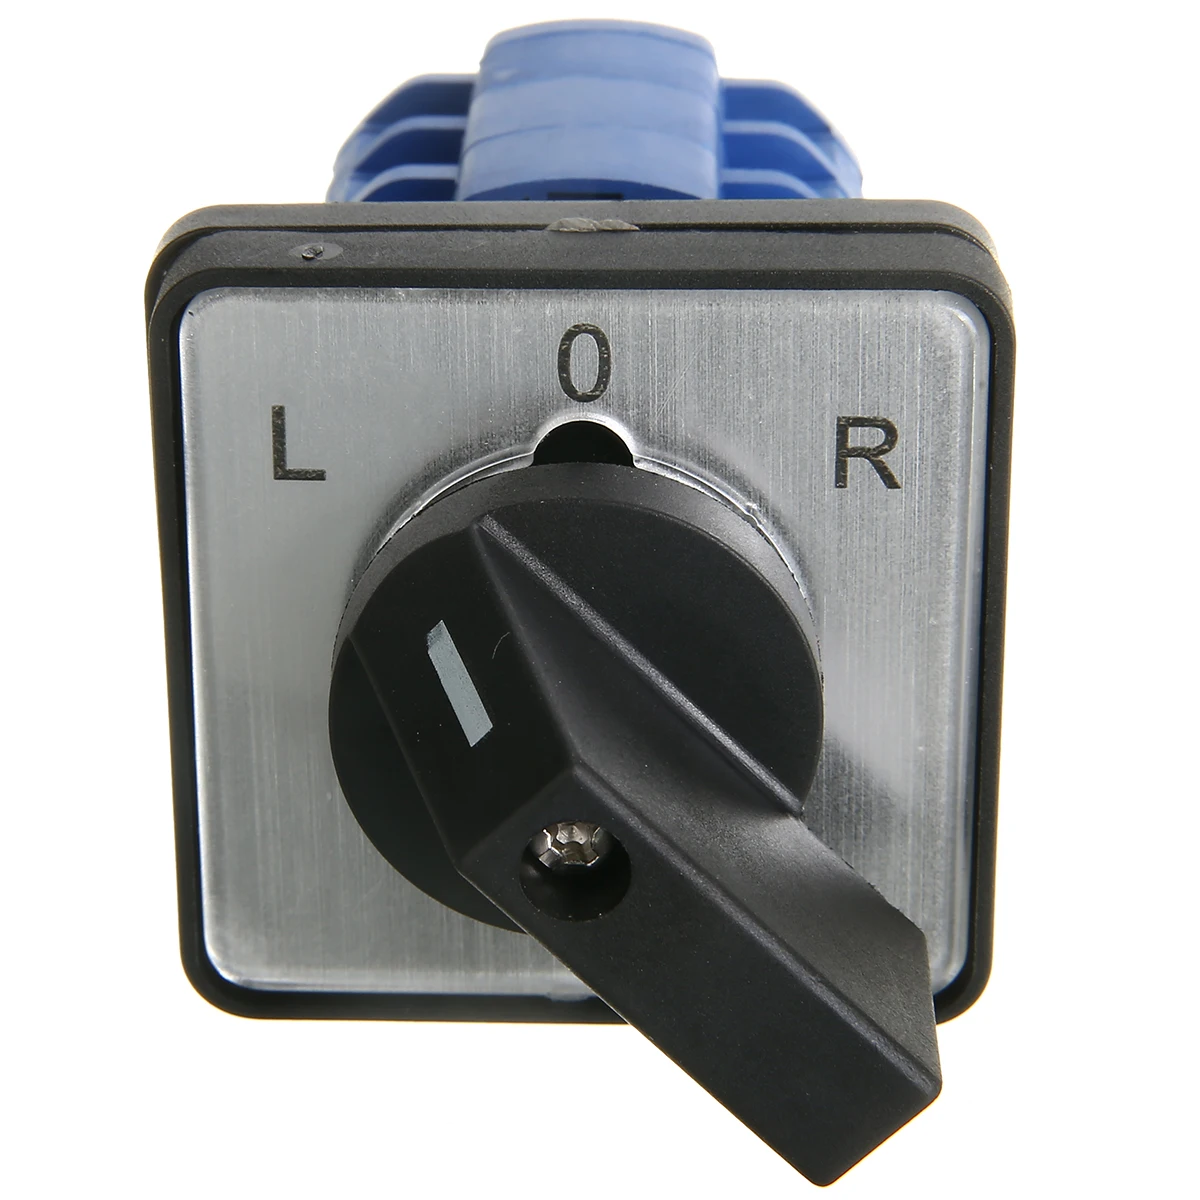 L-0-R 20A/32A Высокое Качество кулачковые переключатели поворотный переключатель управления панель монтируется для электрика с помощью инструментов